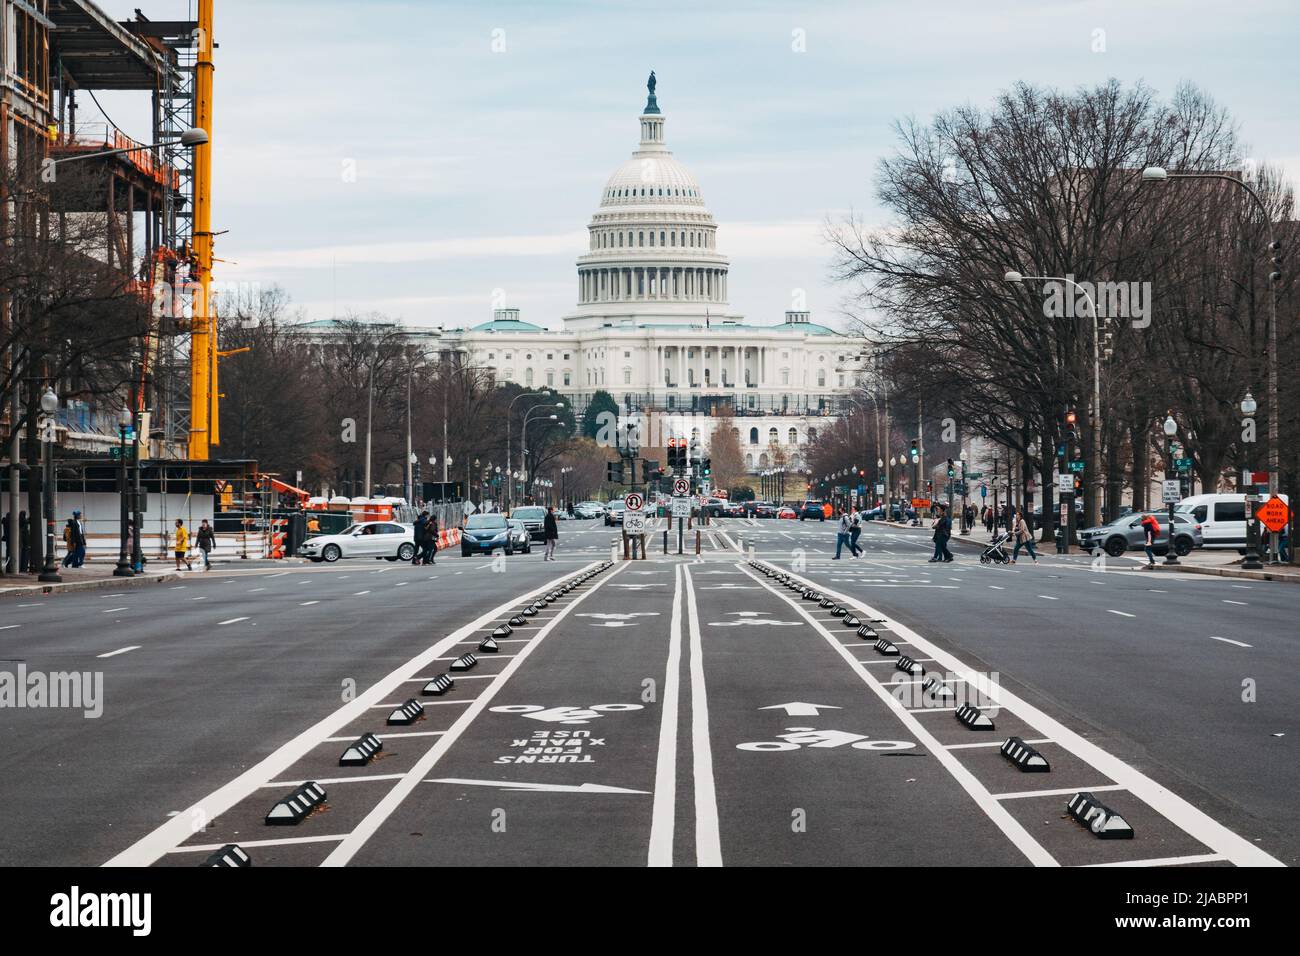 Pistes cyclables au milieu de la route près du bâtiment du Capitole des États-Unis, Washington, D.C. Banque D'Images